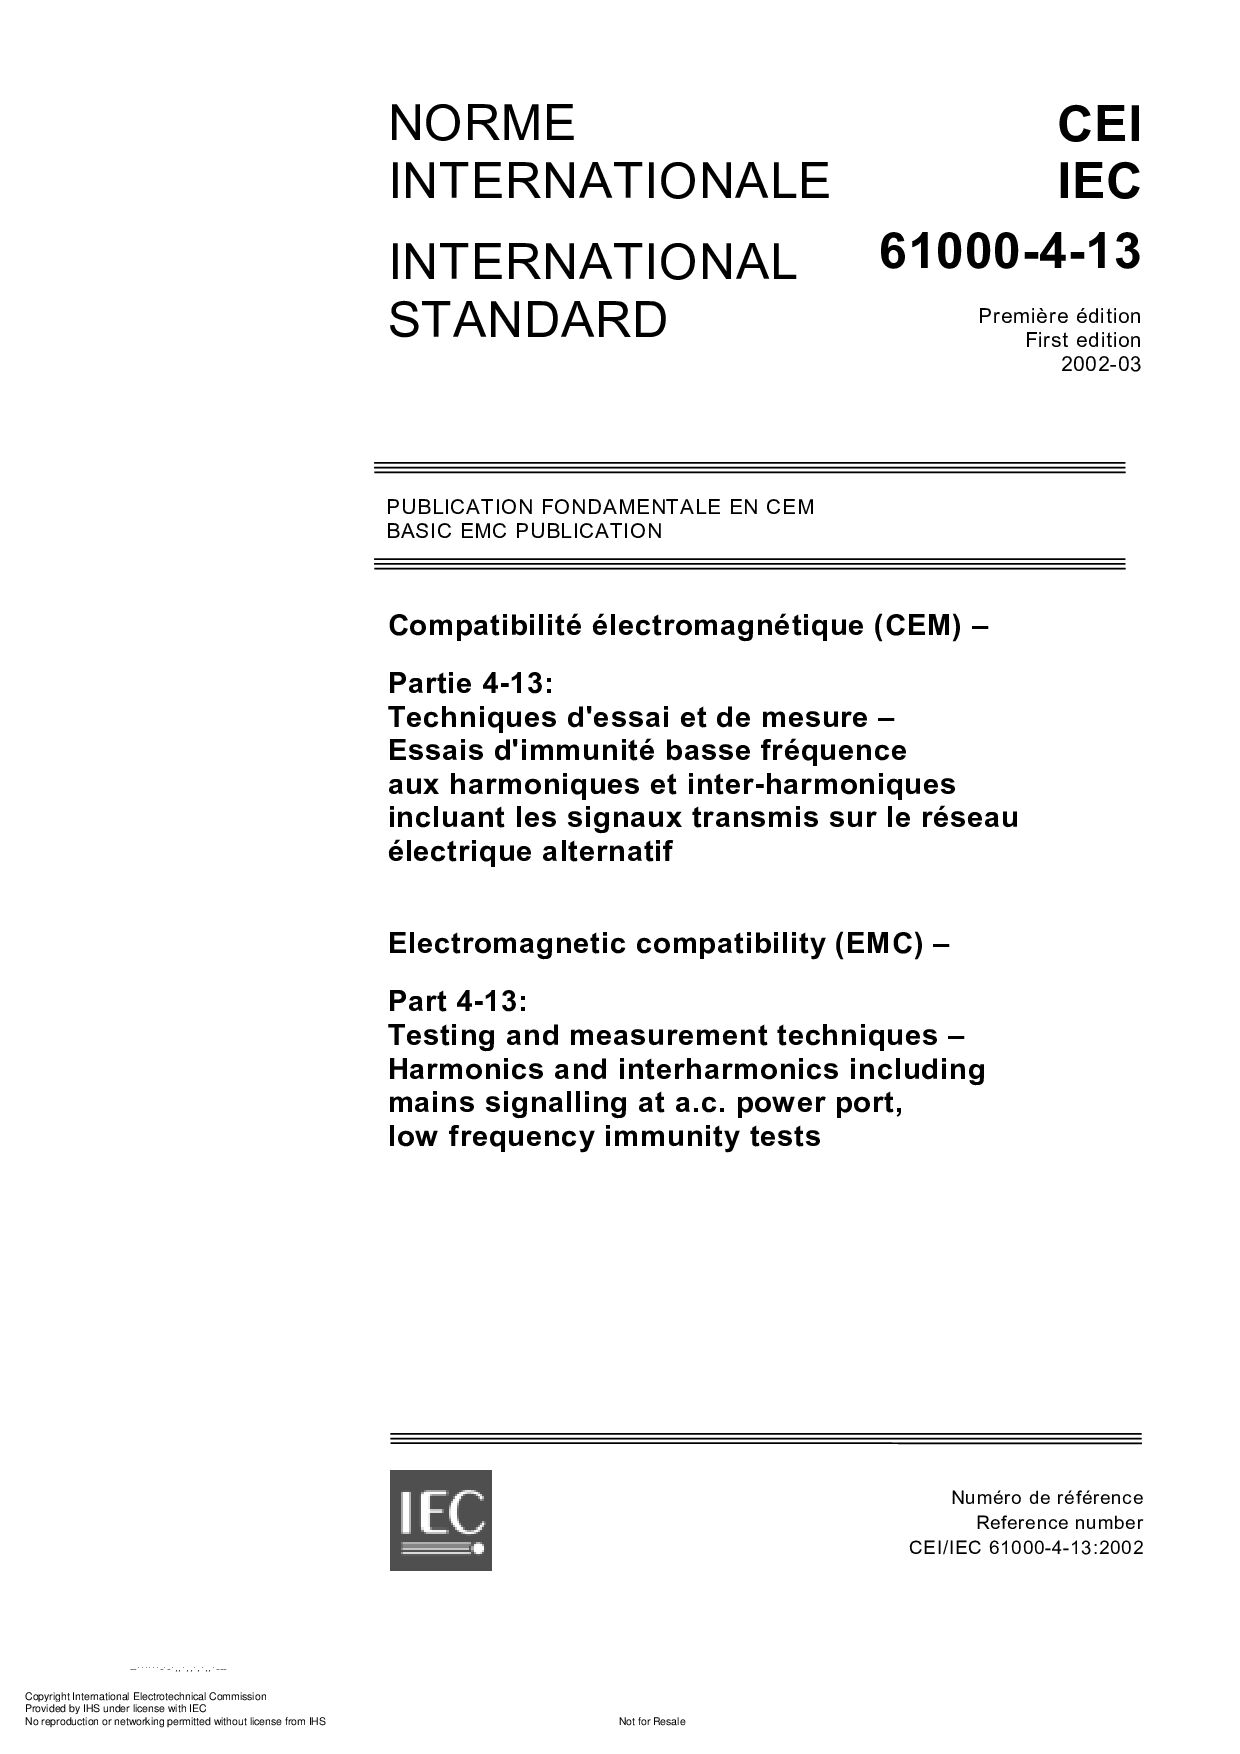 IEC 61000-4-13:2002